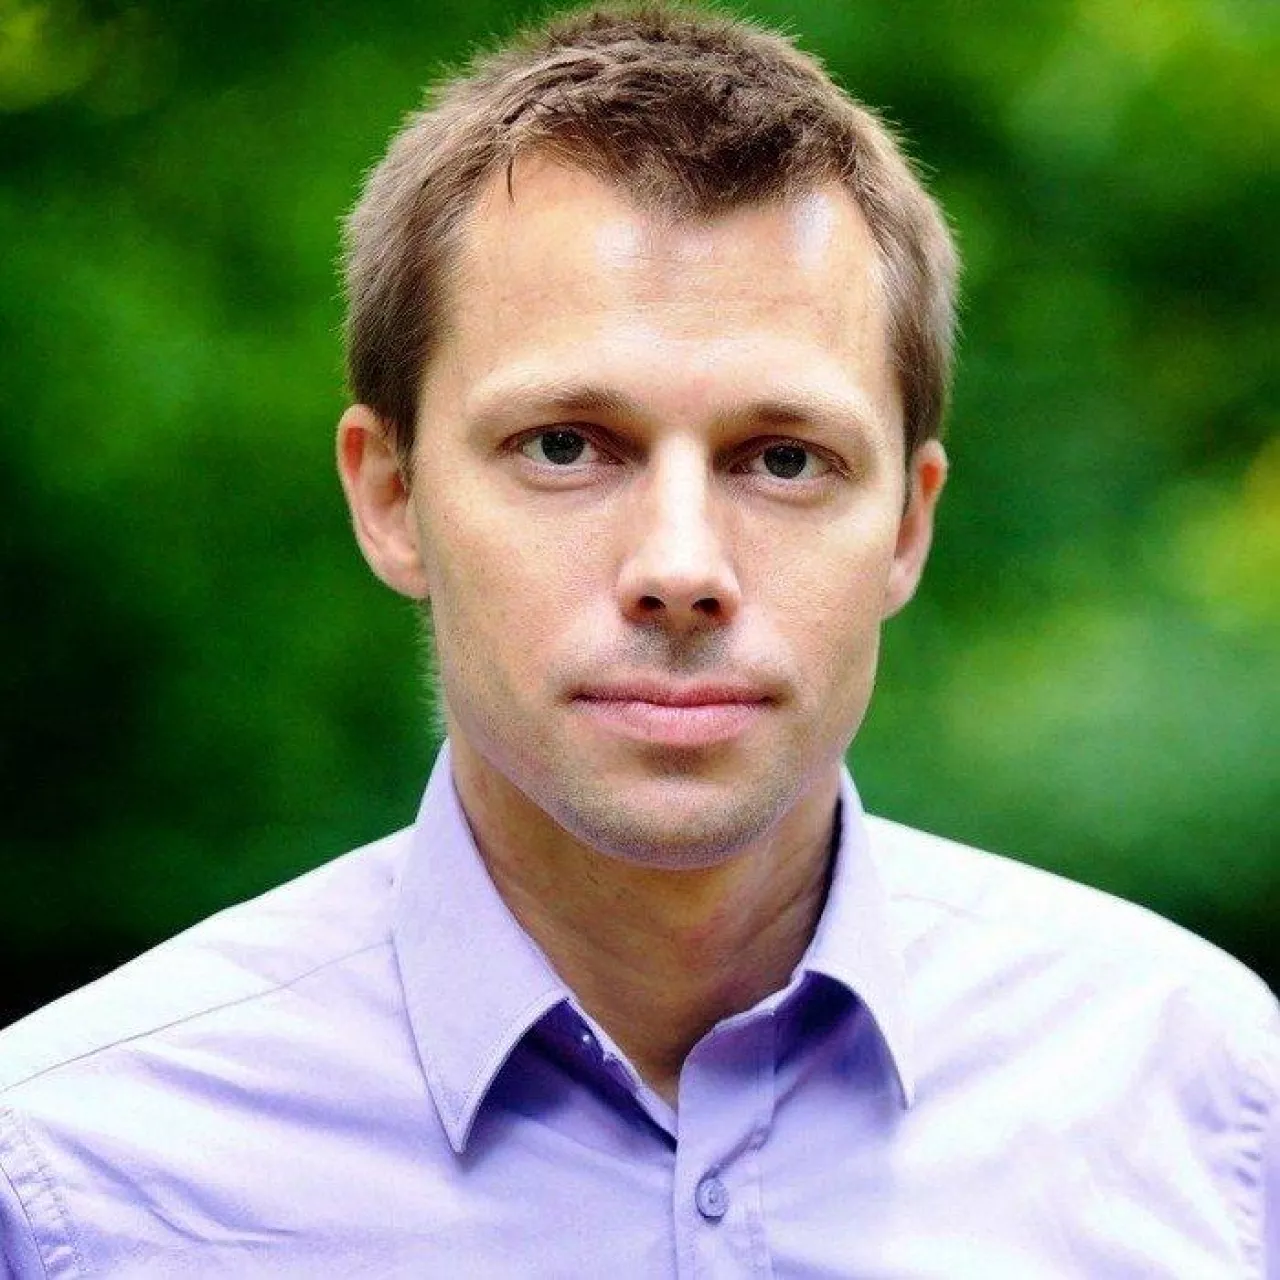 Sebastian Starzyński, prezes instytutu badawczego ABR Sesta (Fot.materiały prasowe)